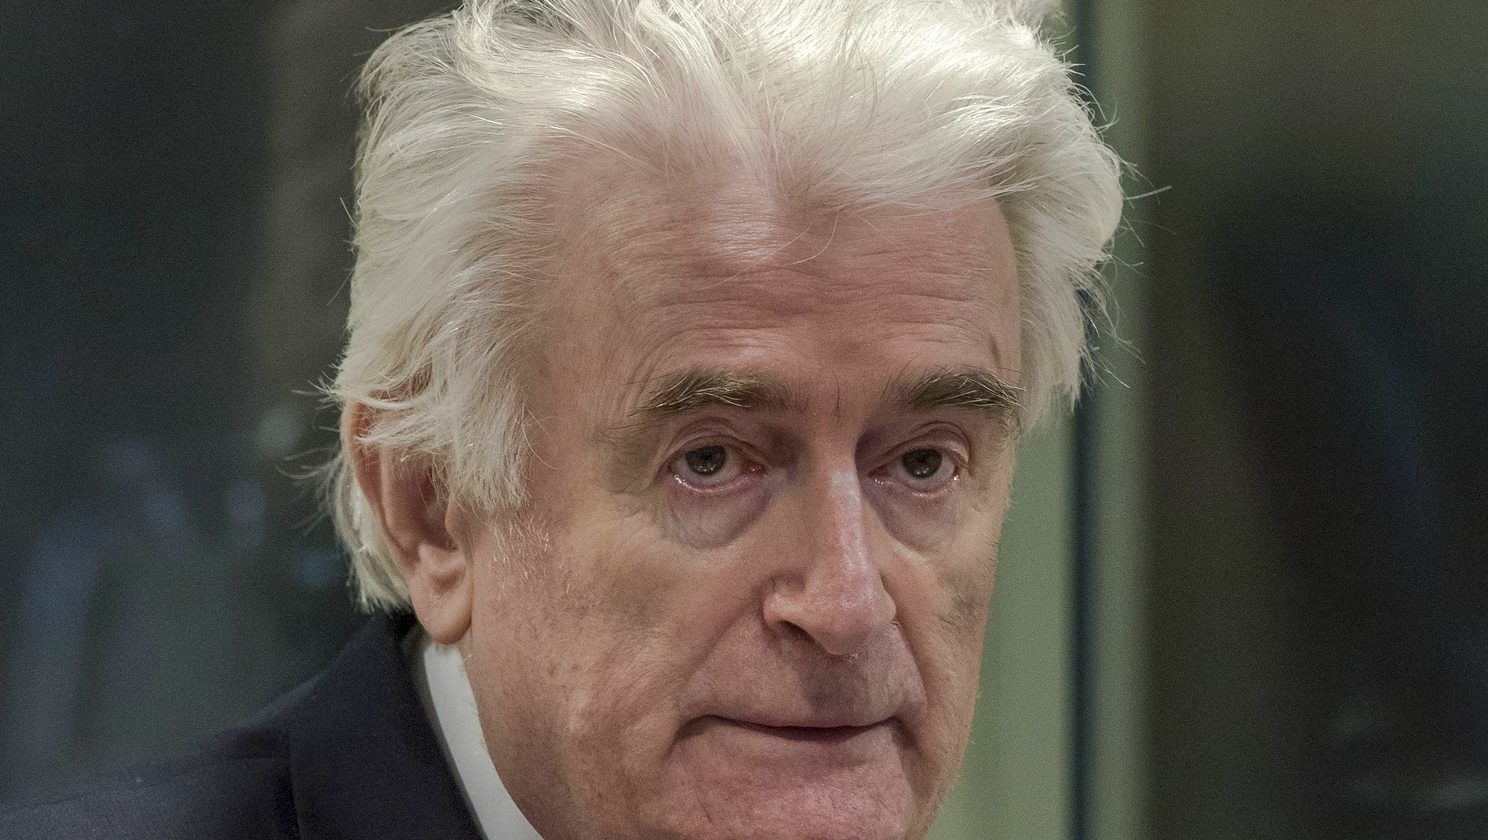 Karadzic a börtönből tartott beszédet